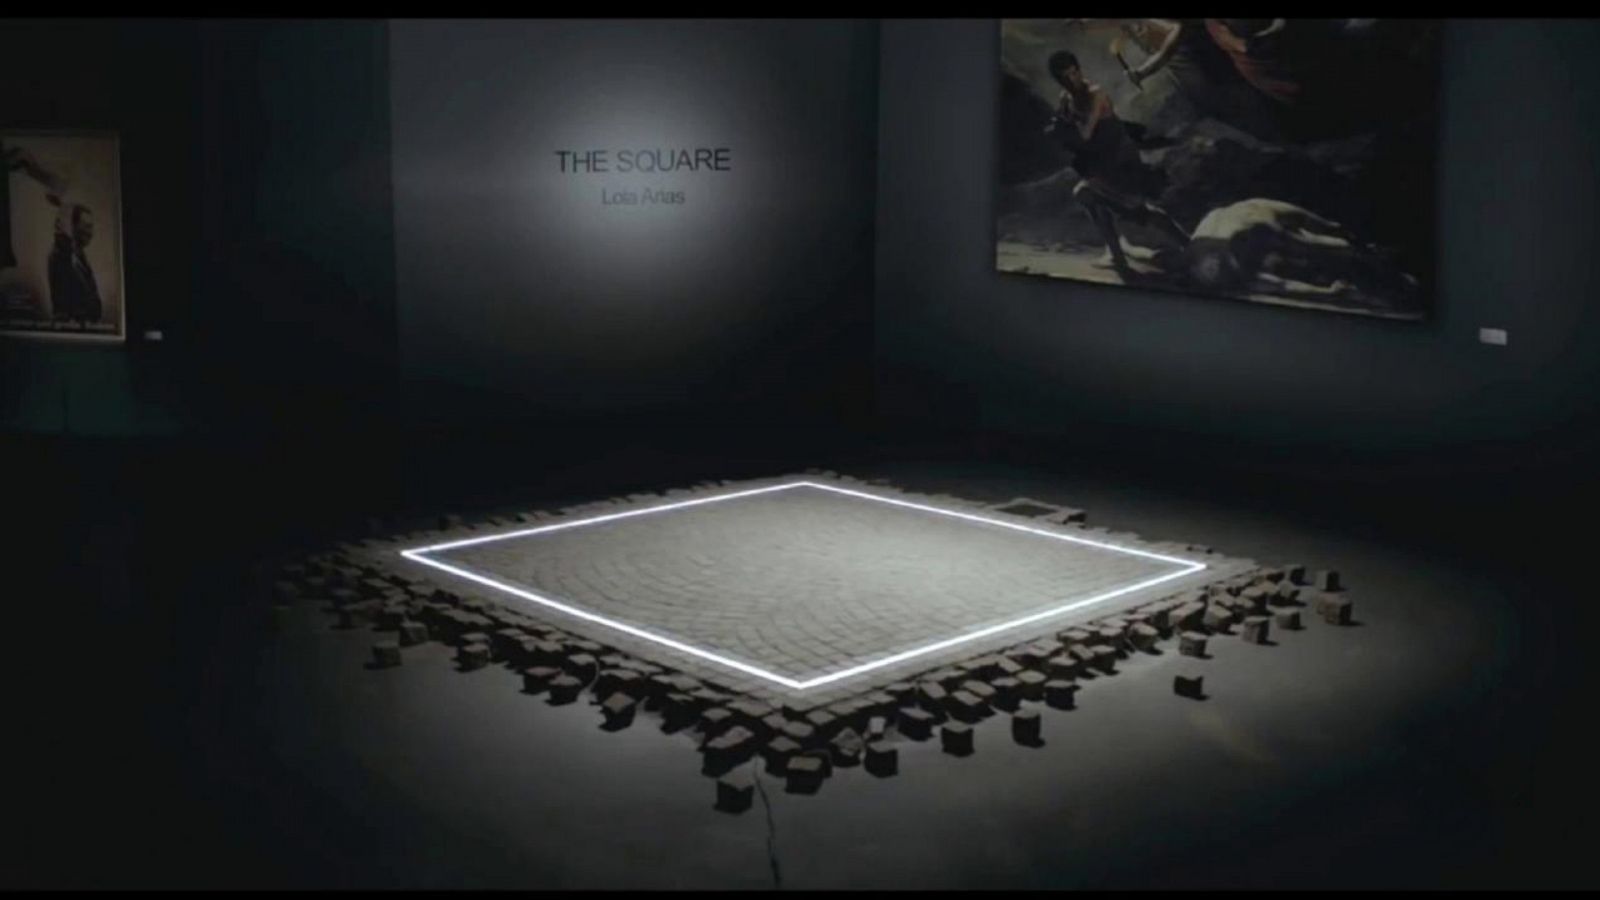 El cine de La 2 - The Square (presentación) - RTVE.es